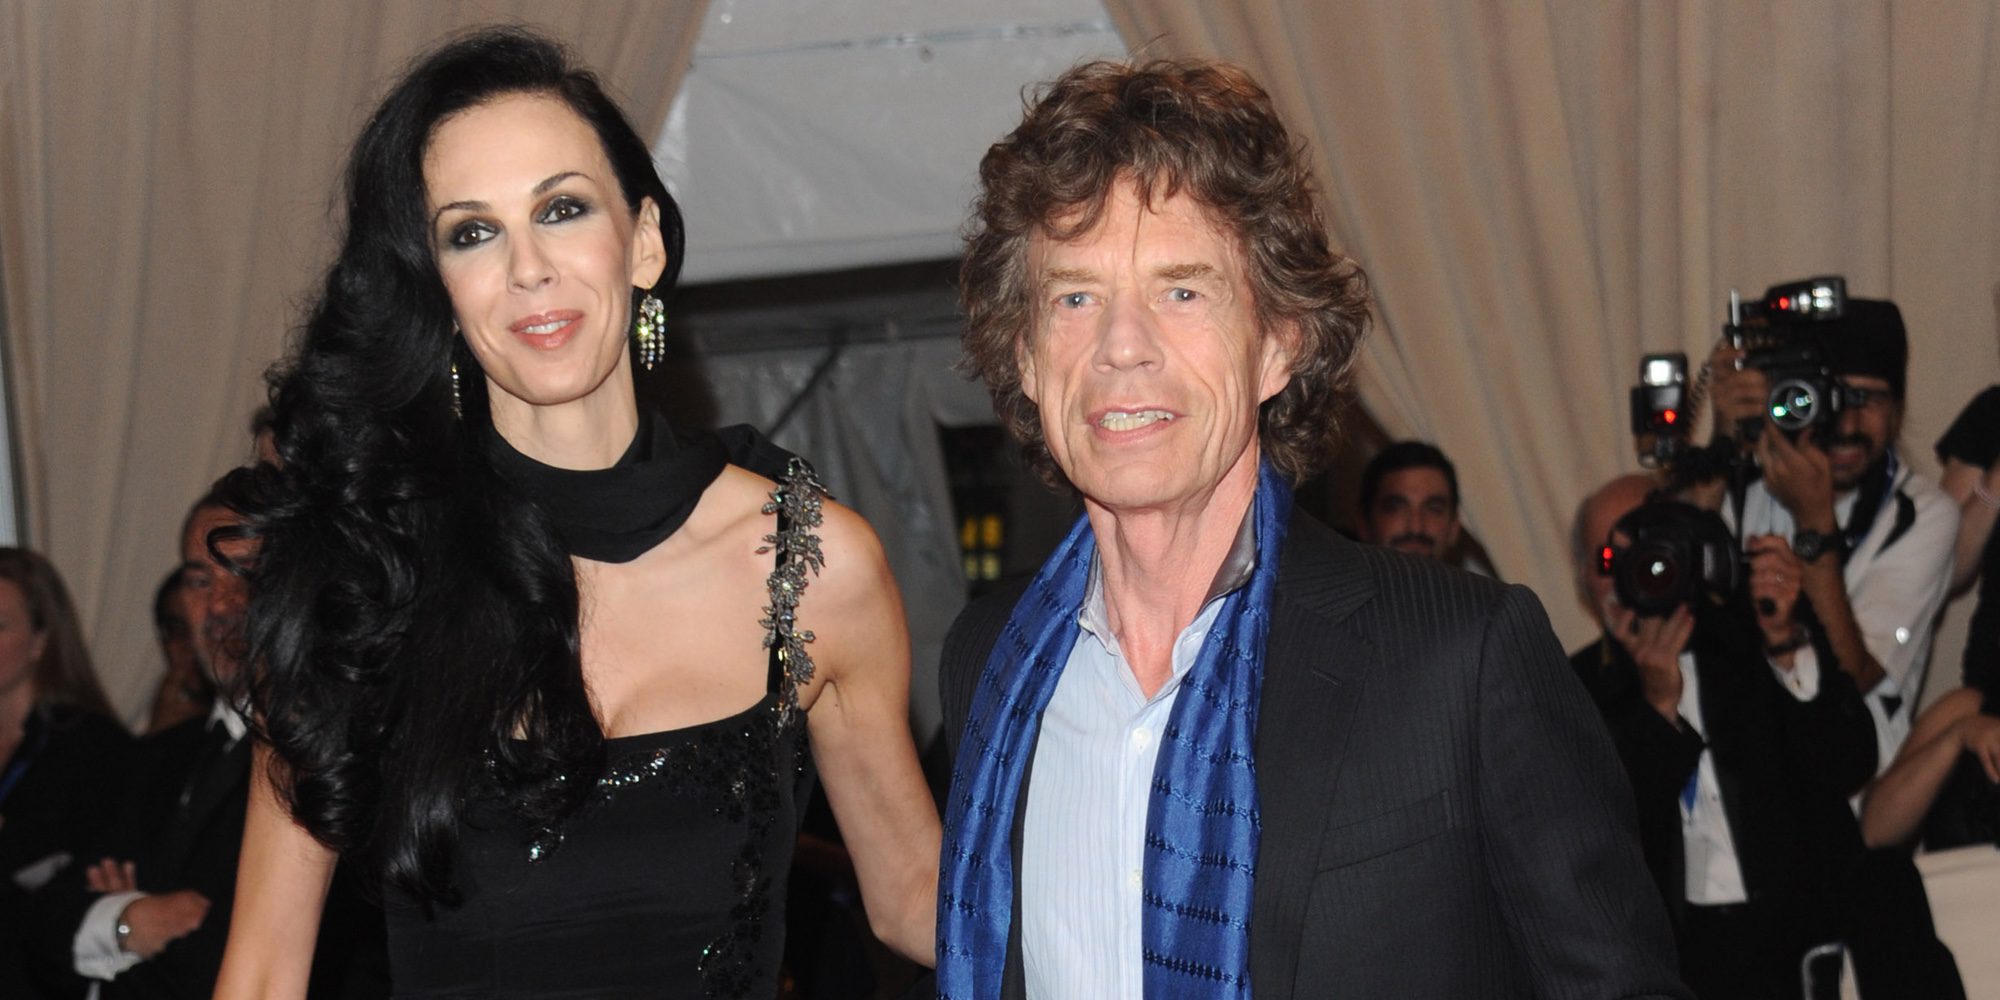 Mick Jagger recuerda con cariño a la fallecida L'Wren Scott en el que sería su 53 cumpleaños